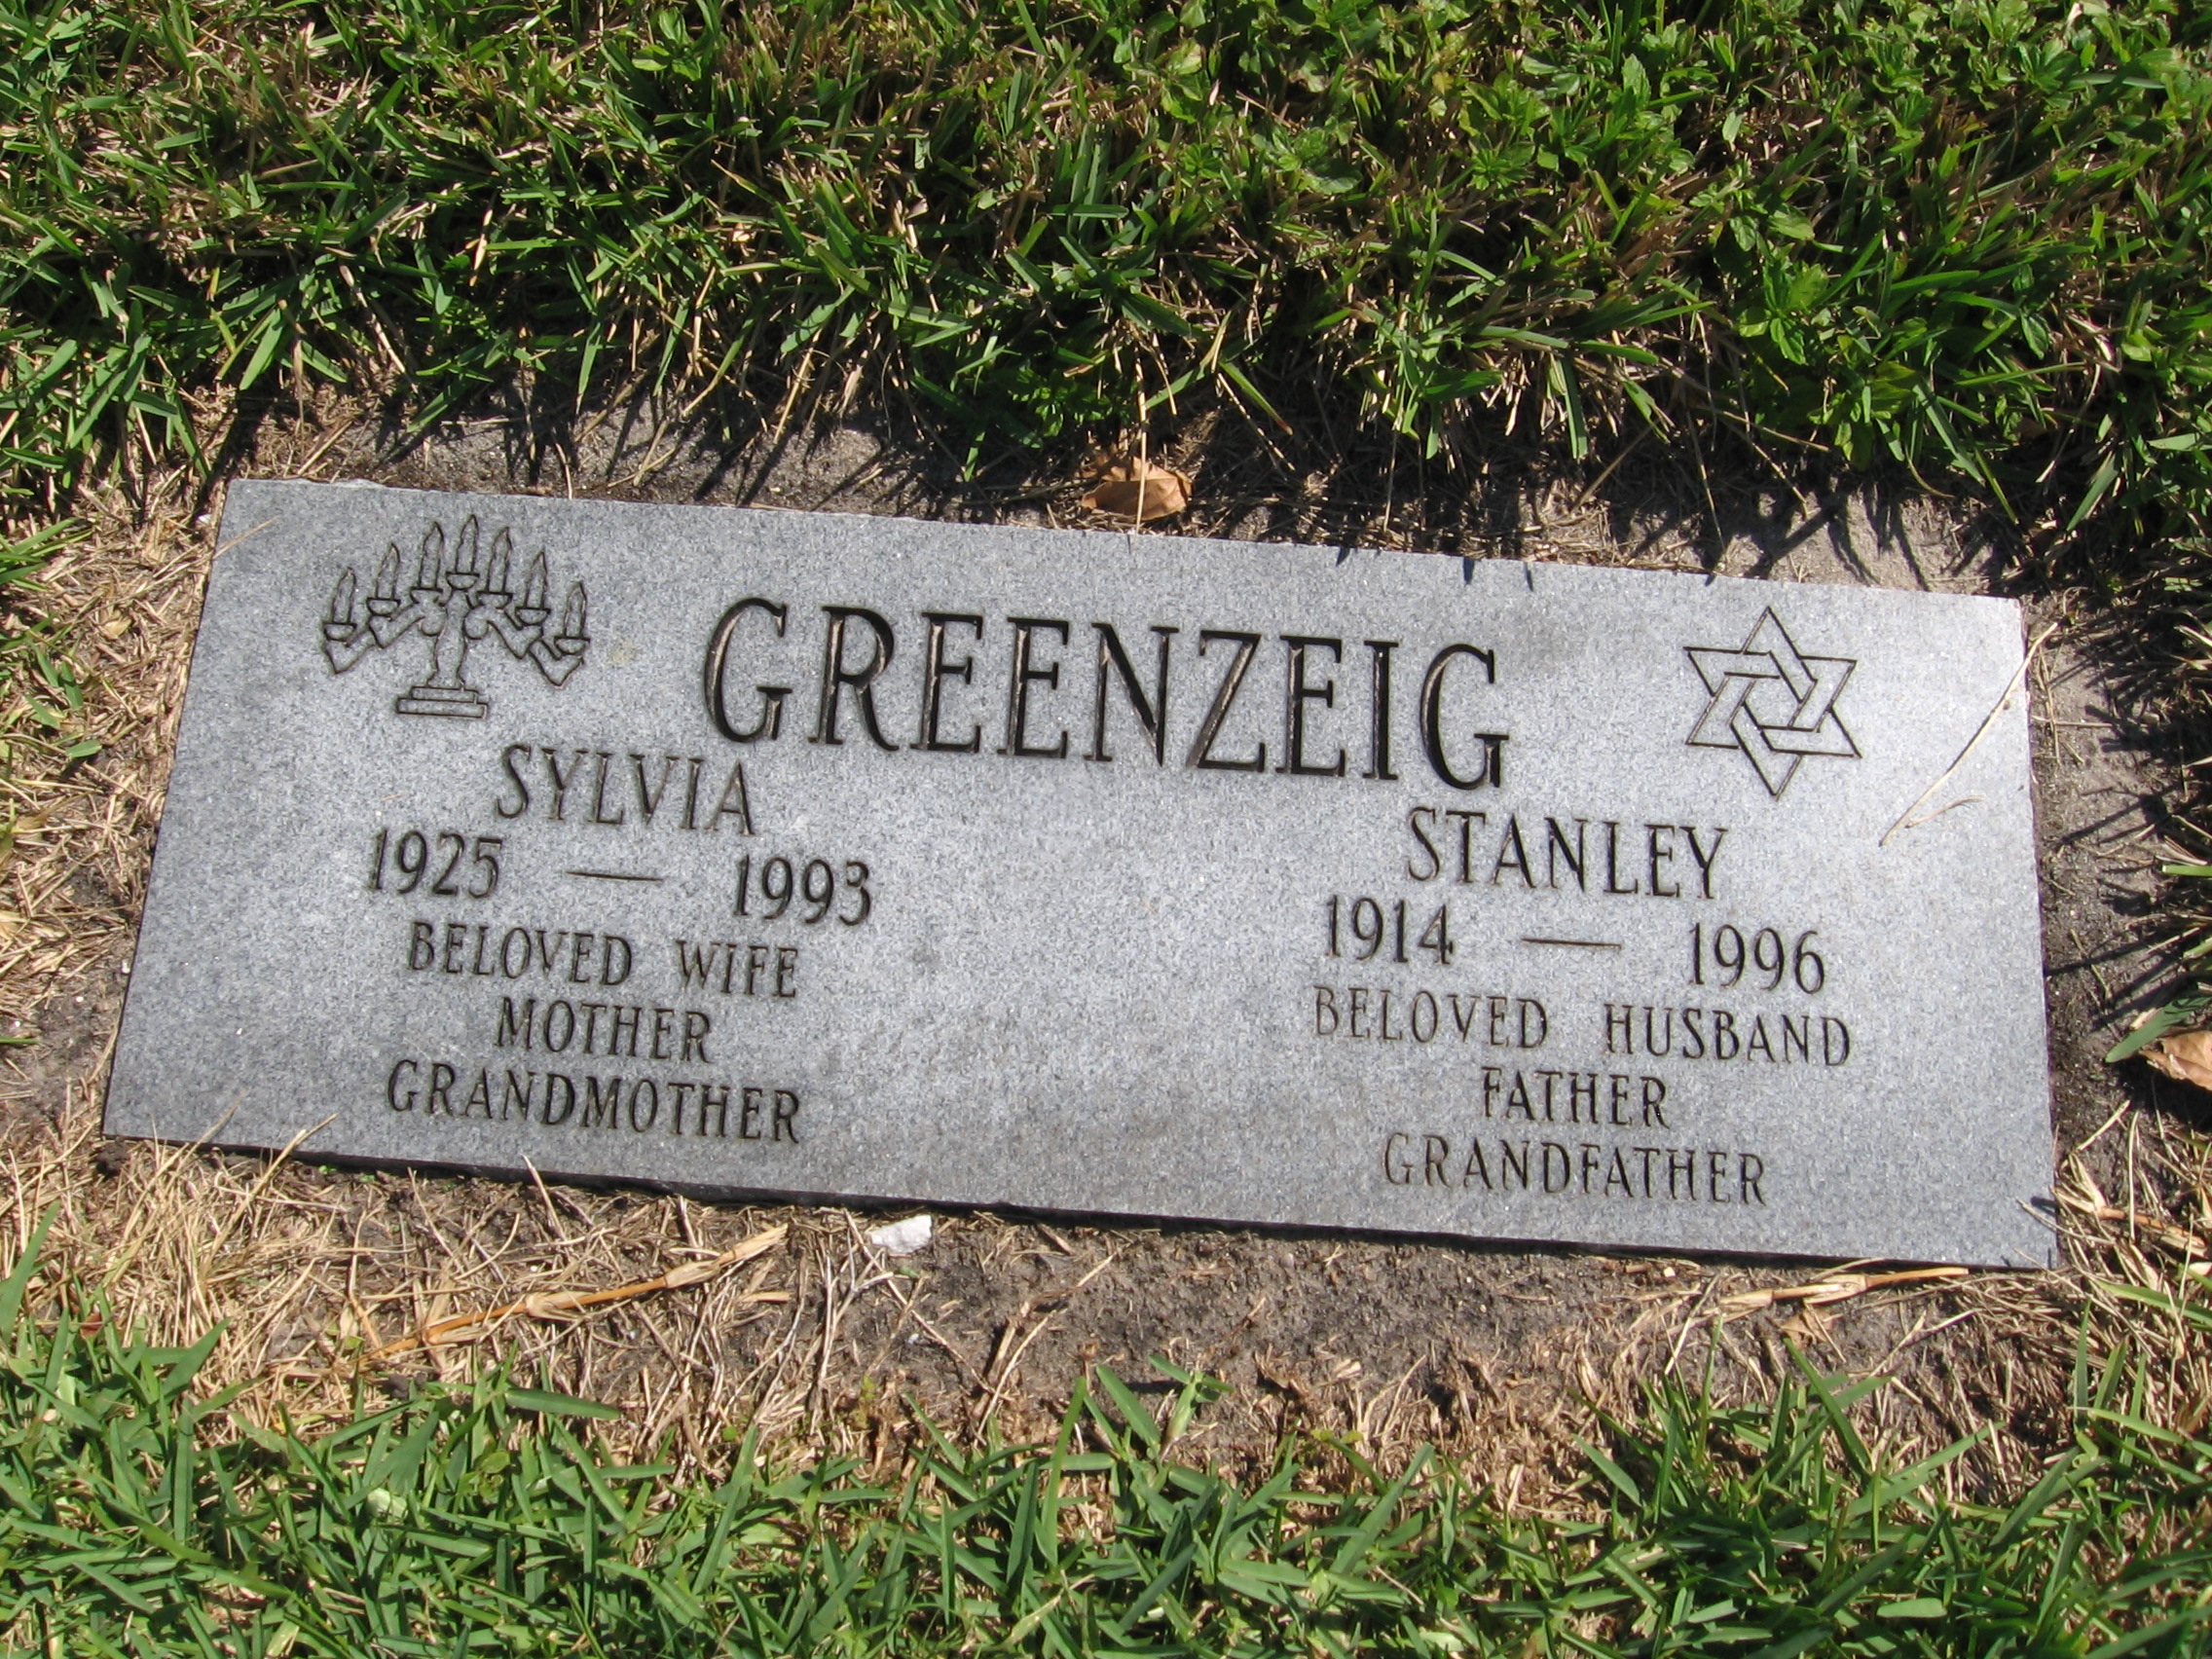 Stanley Greenzeig